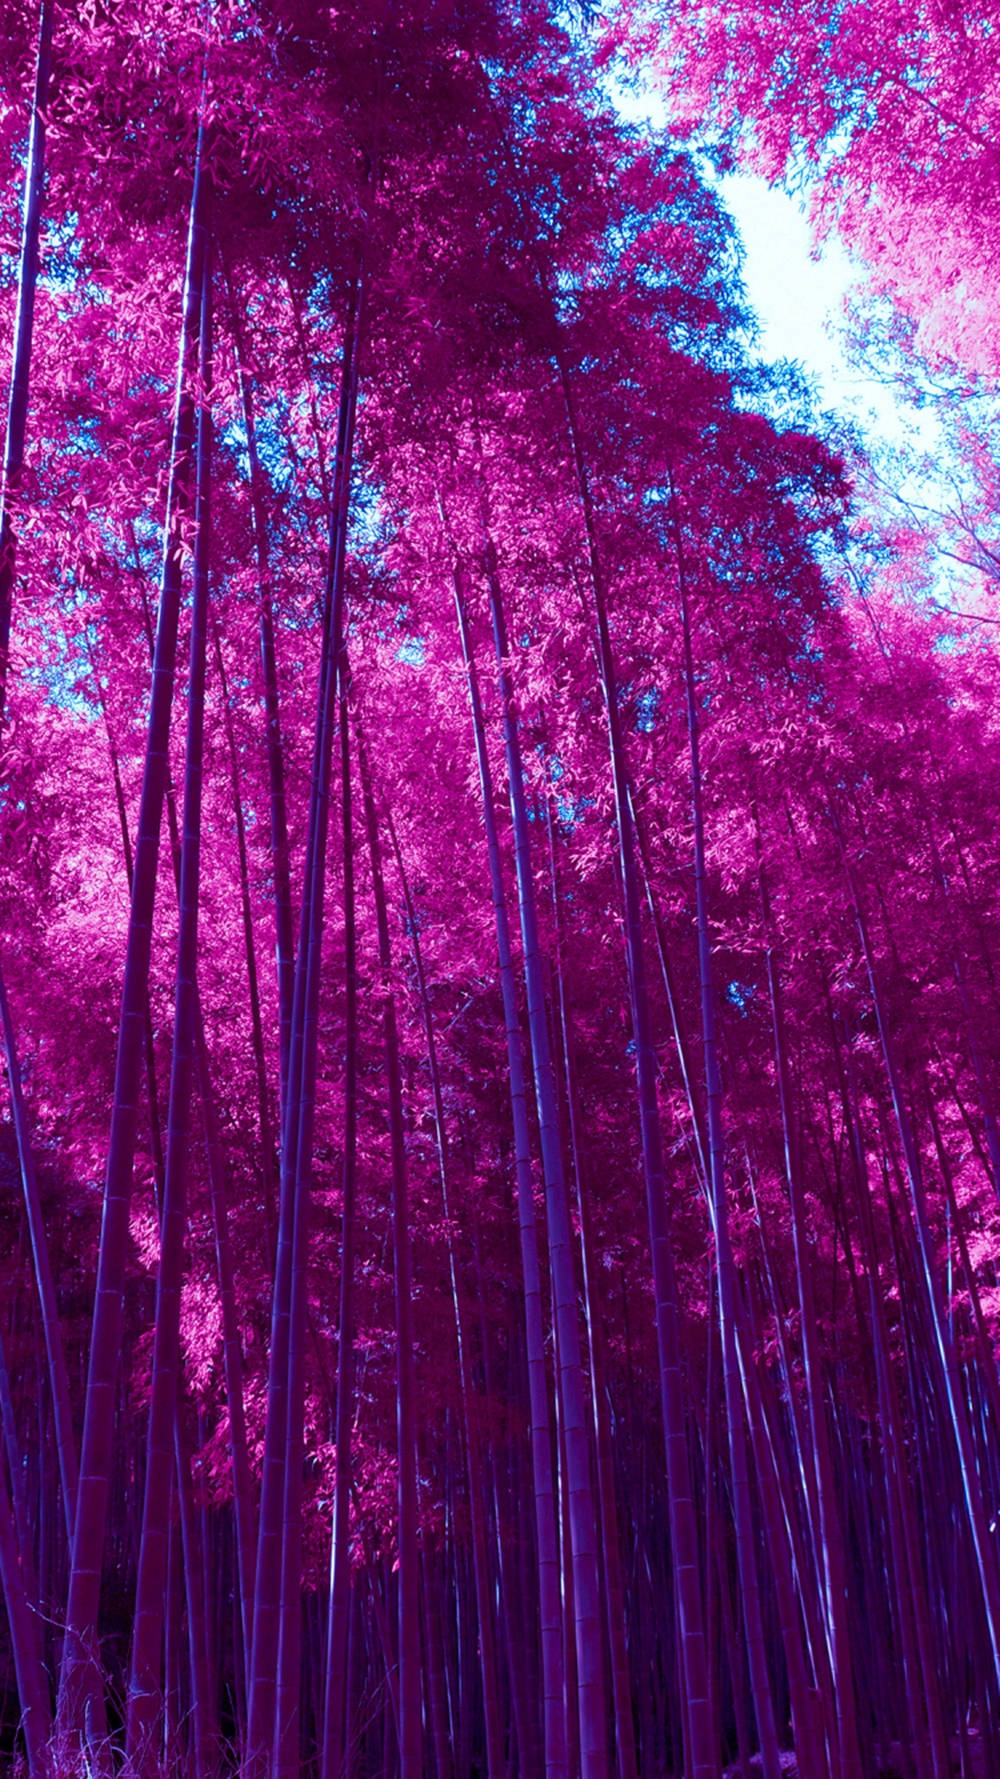 Grovede Bambú Rosa Para Iphone. Fondo de pantalla